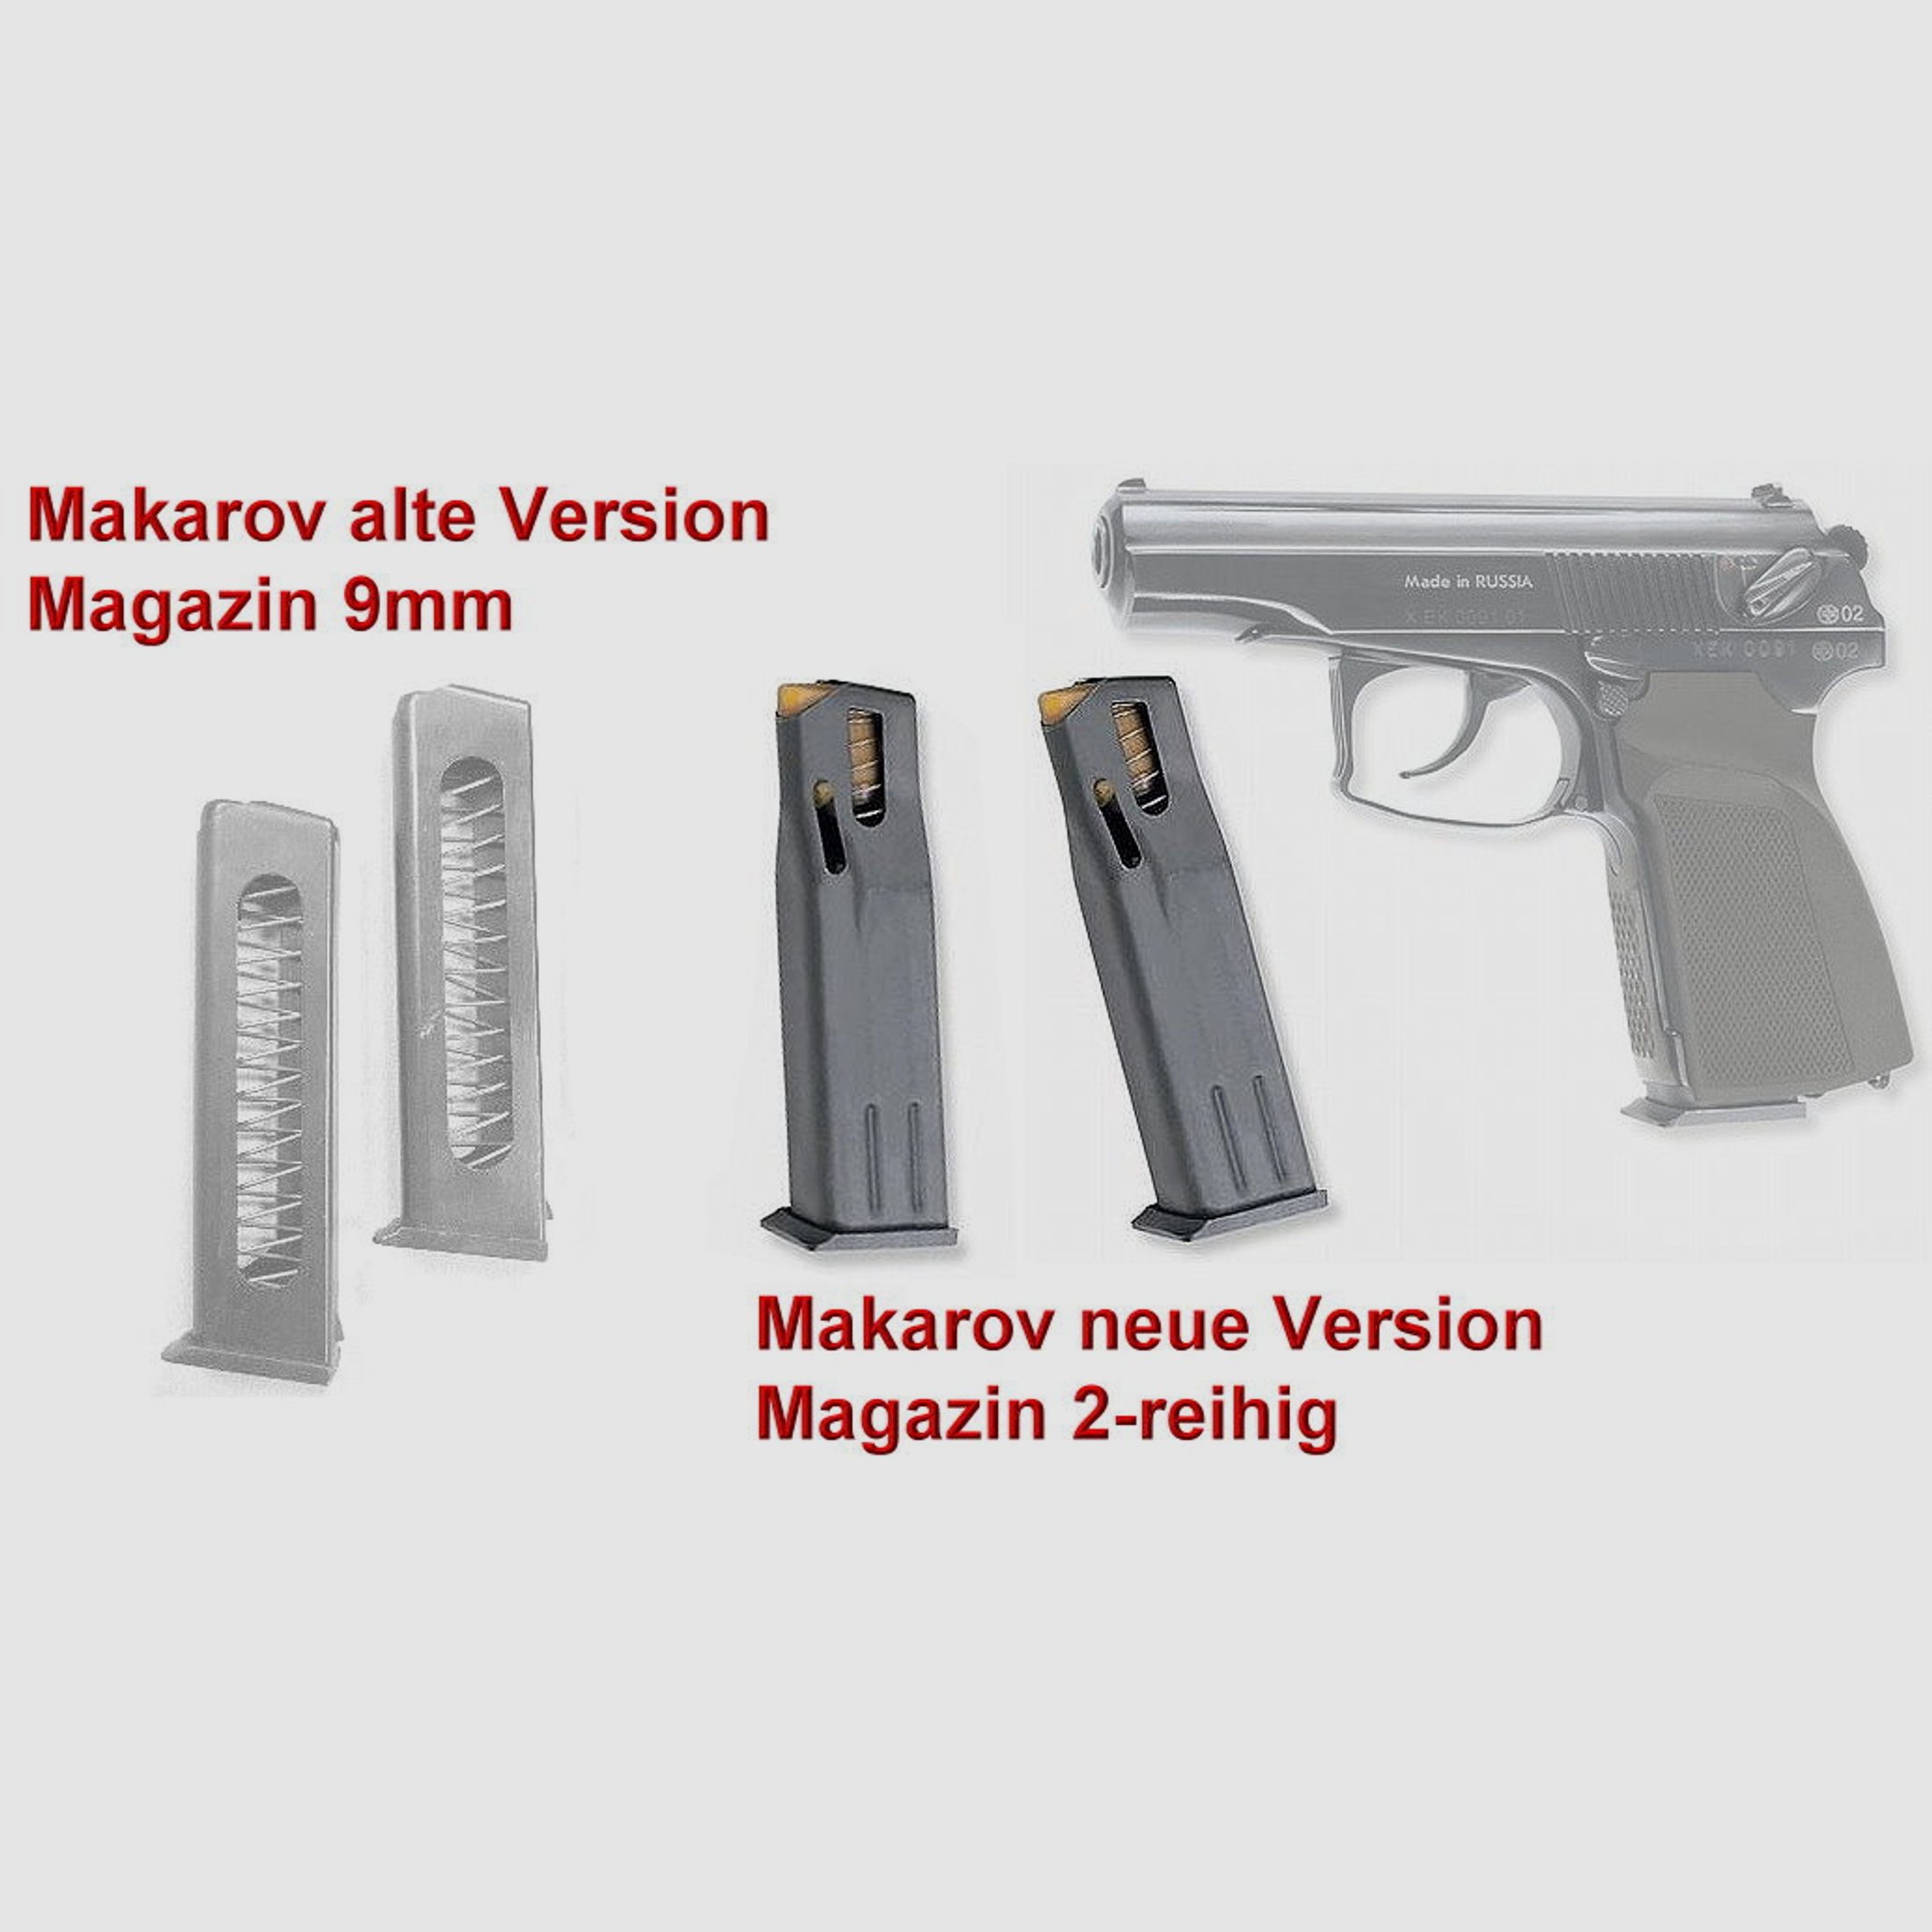 Magazin für Makarov 9mm PMM Baikal IZH mit Seitenhalter